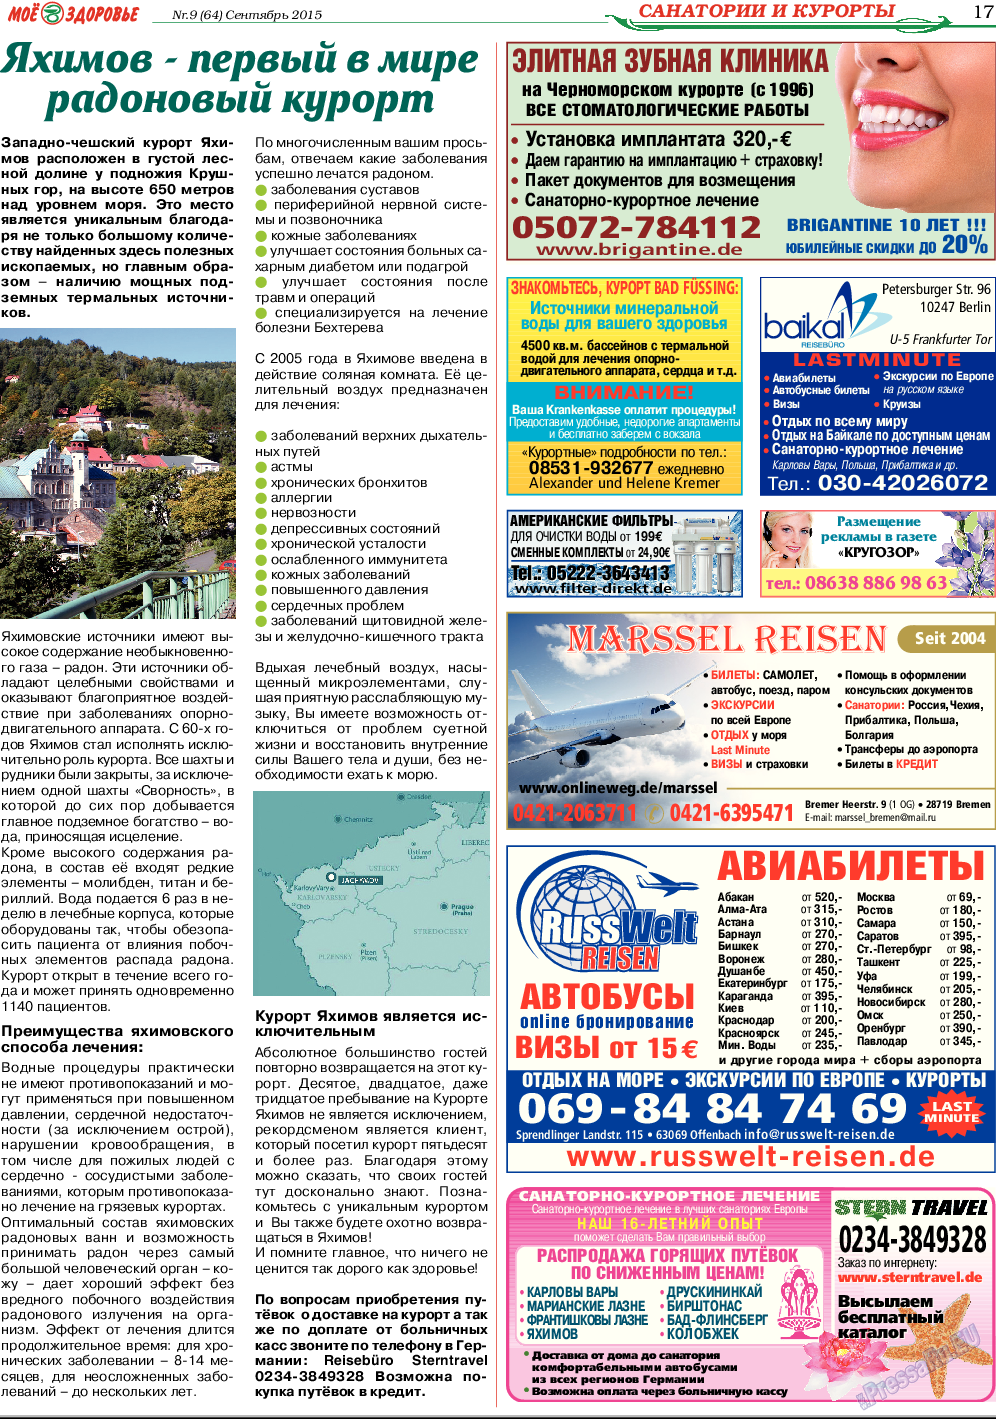 Кругозор, газета. 2015 №9 стр.17